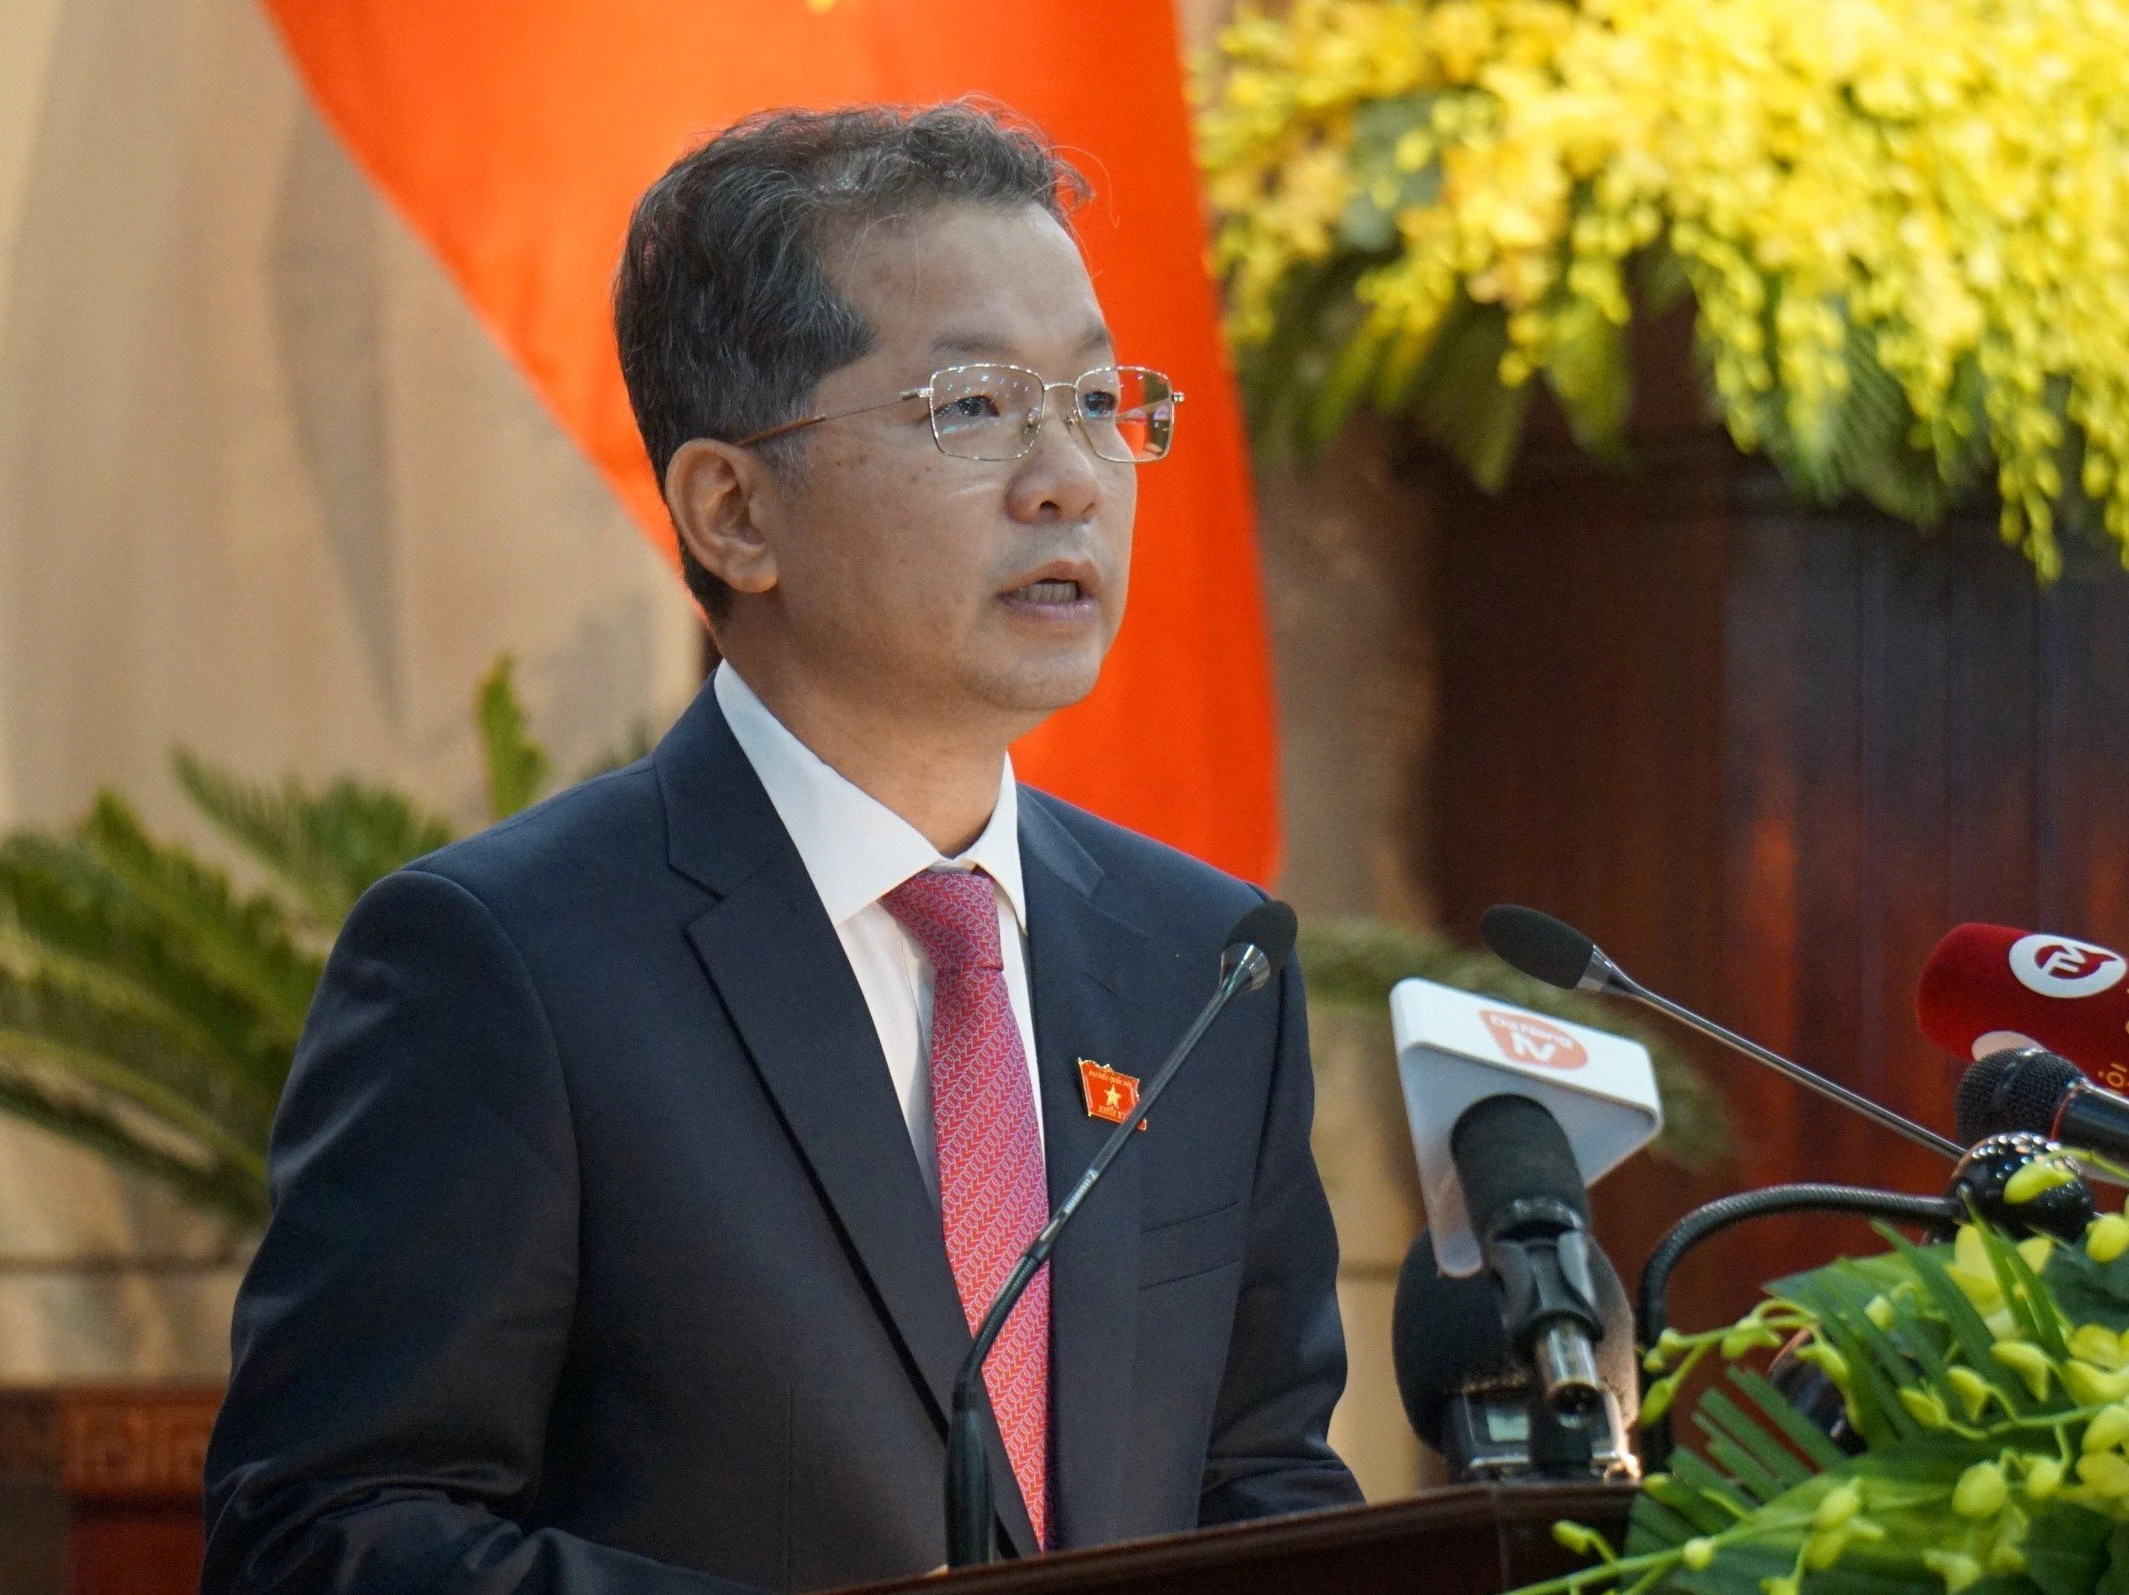 Bí thư Thành ủy Đà Nẵng: Nghị quyết 136 là 'rất mới và chưa có tiền lệ'